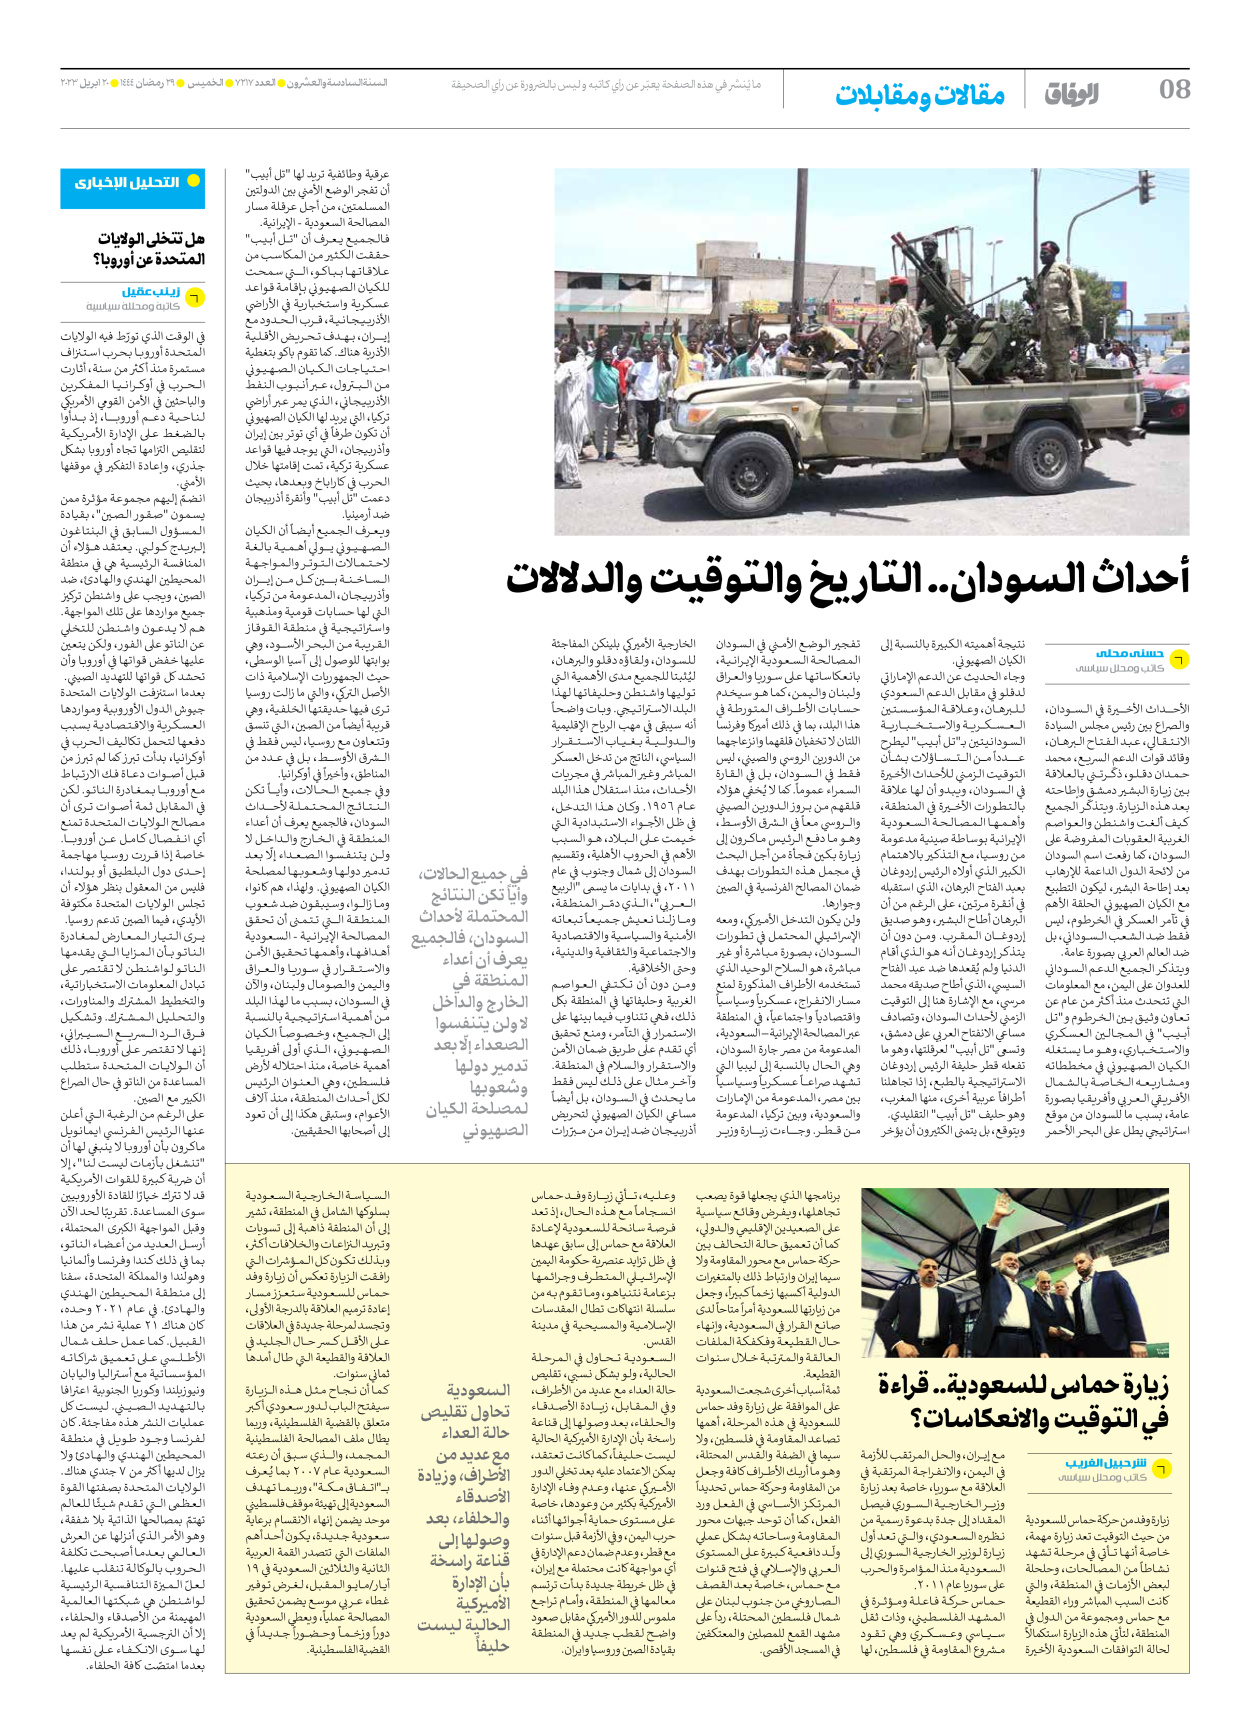 صحیفة ایران الدولیة الوفاق - العدد سبعة آلاف ومائتان وسبعة عشر - ٢٠ أبريل ٢٠٢٣ - الصفحة ۸